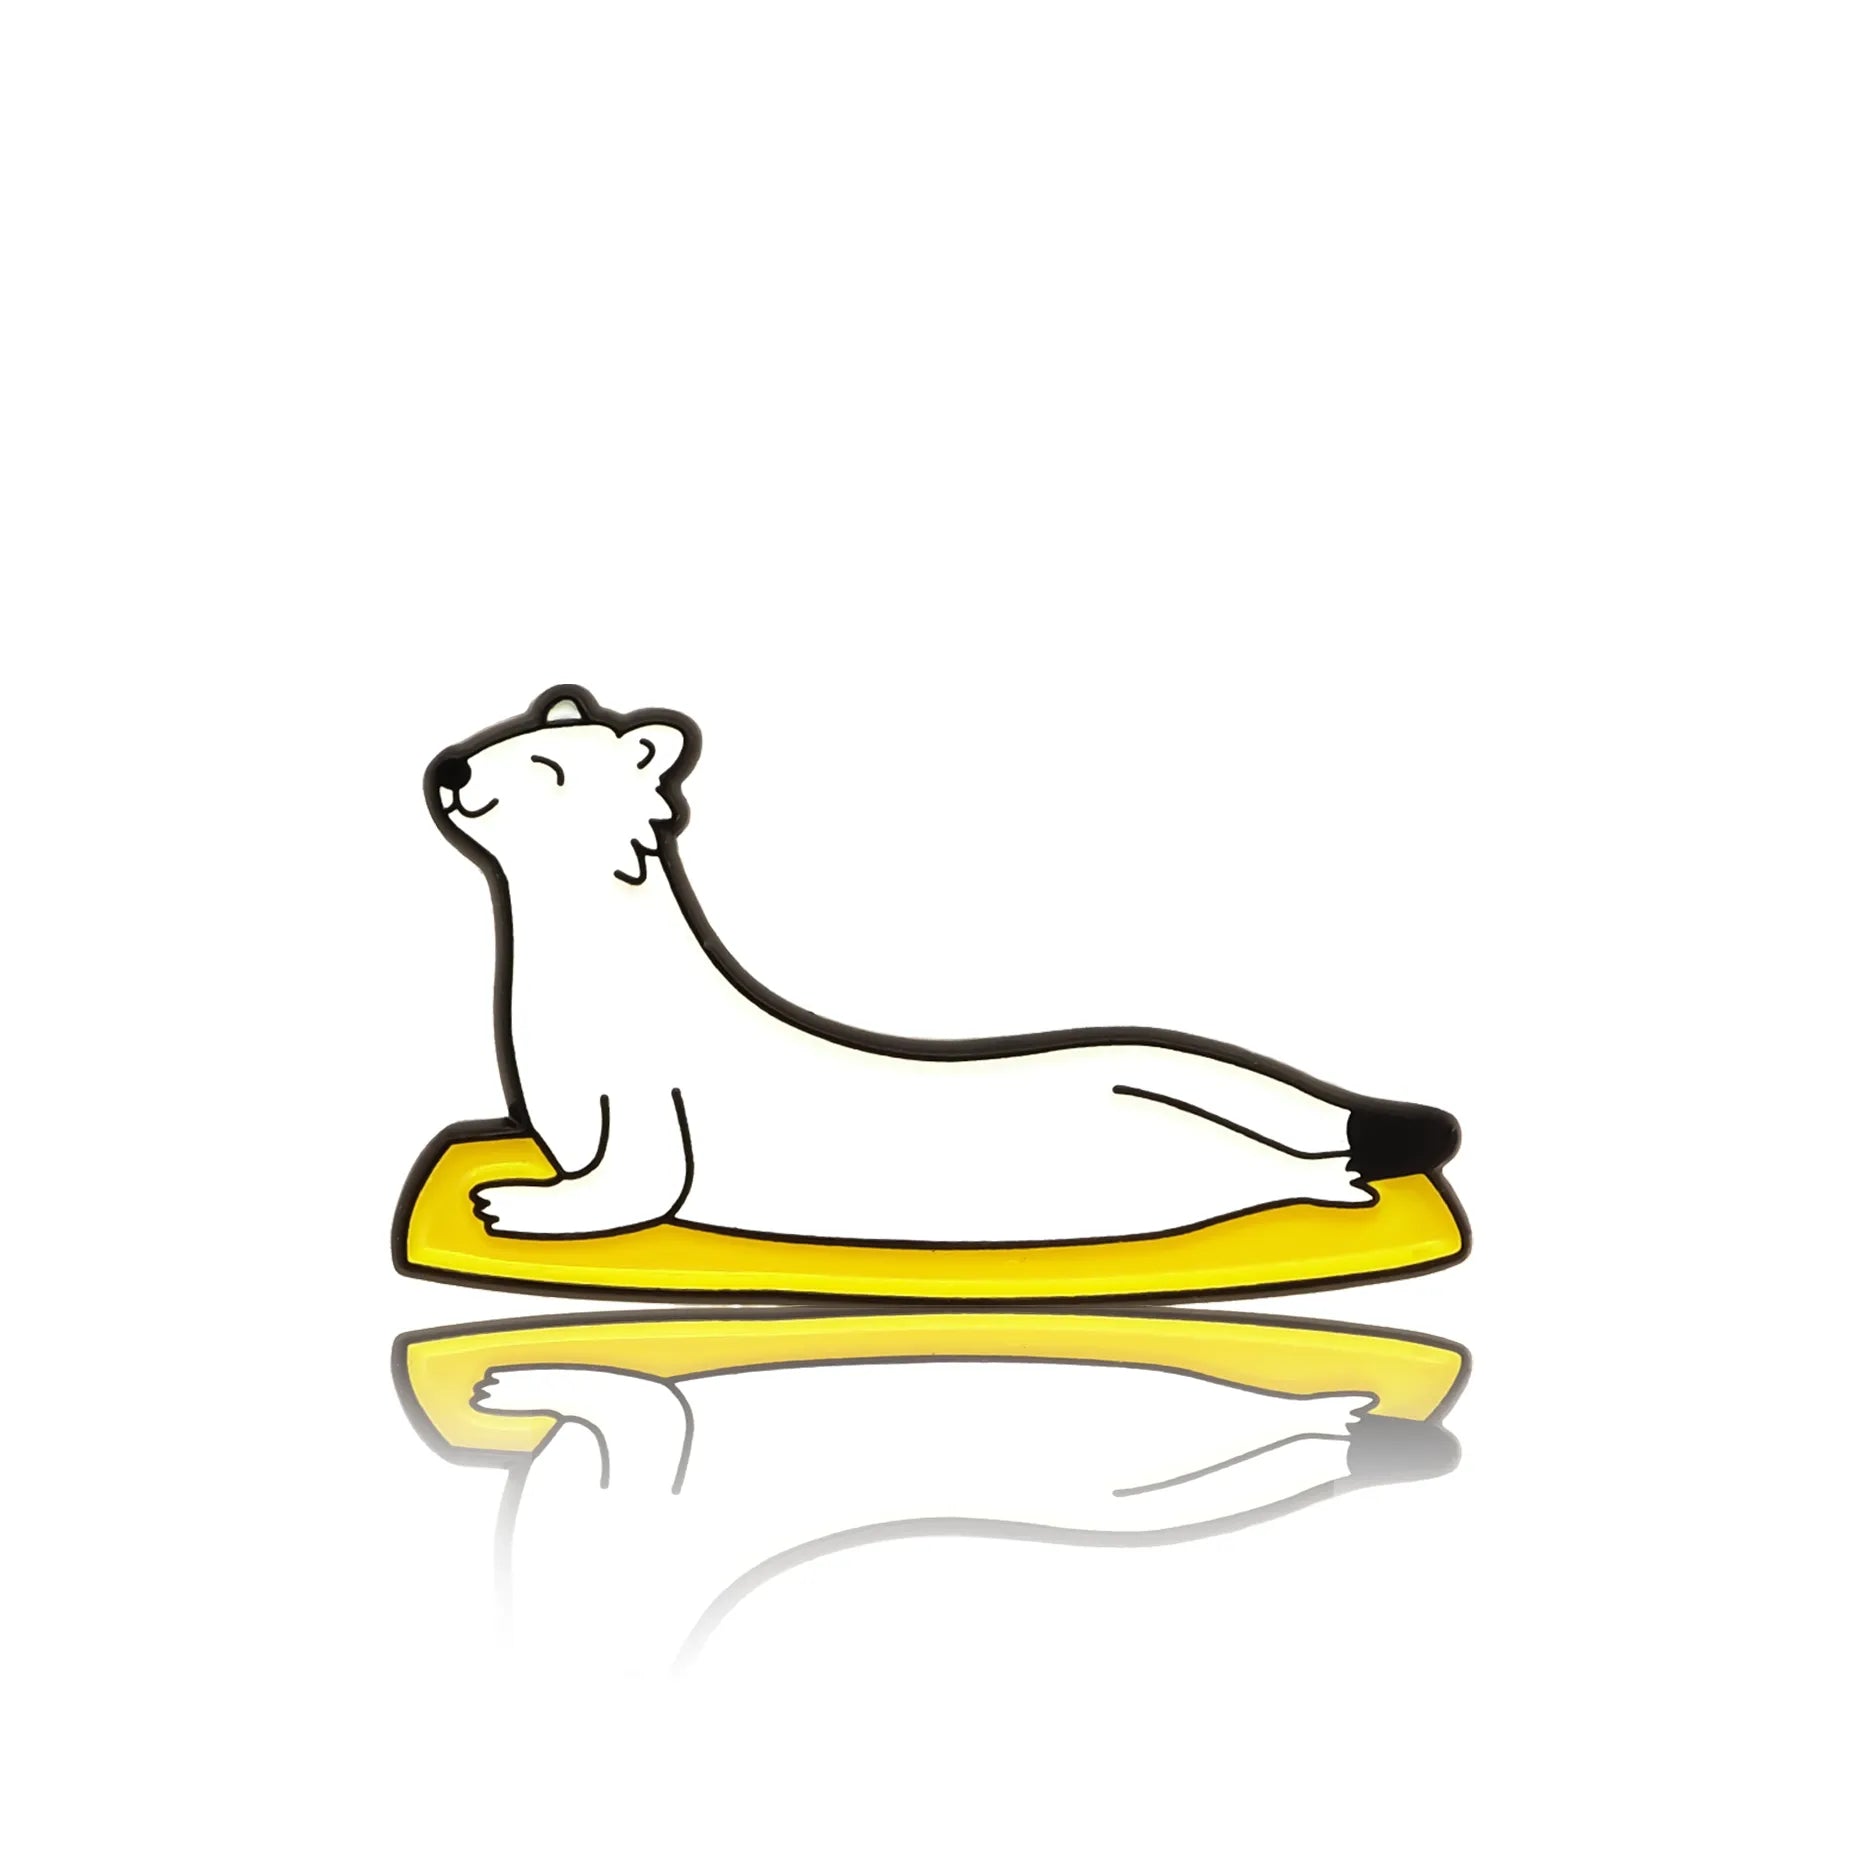 Biała fretka ćwicząca jogę na żółtej karimacie